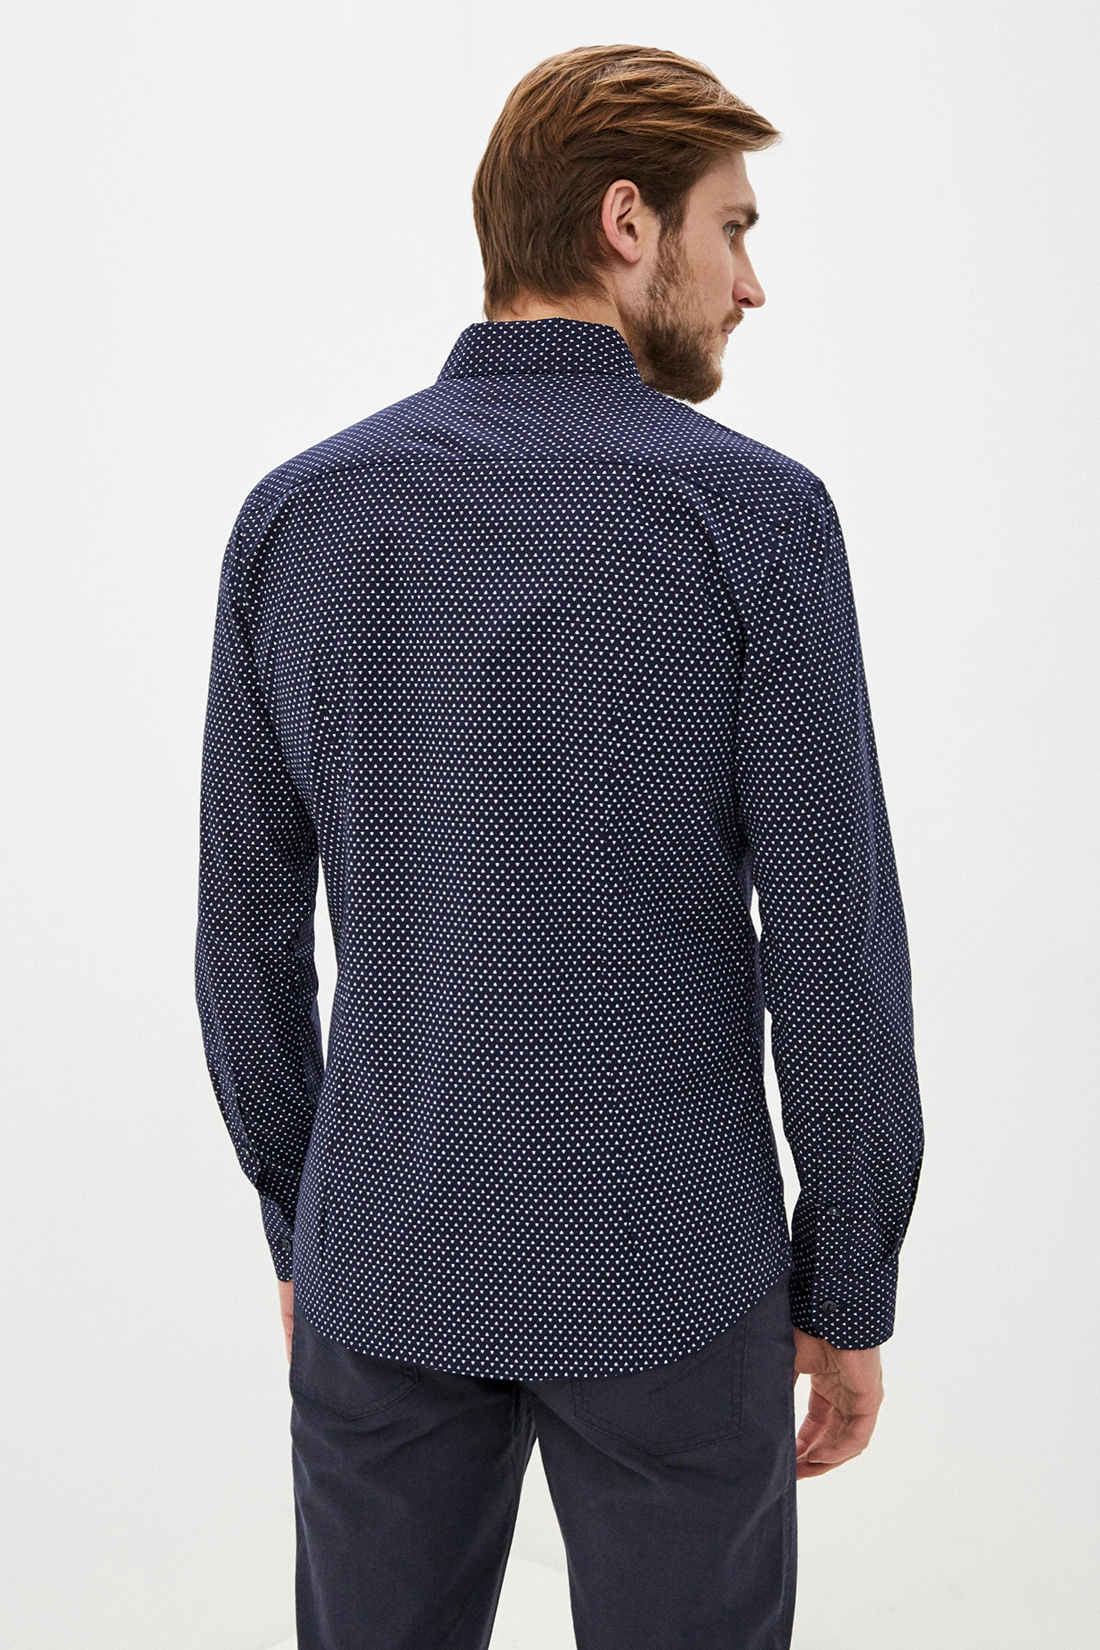 Классическая рубашка с принтом (арт. baon B660012), размер L, цвет синий Классическая рубашка с принтом (арт. baon B660012) - фото 2